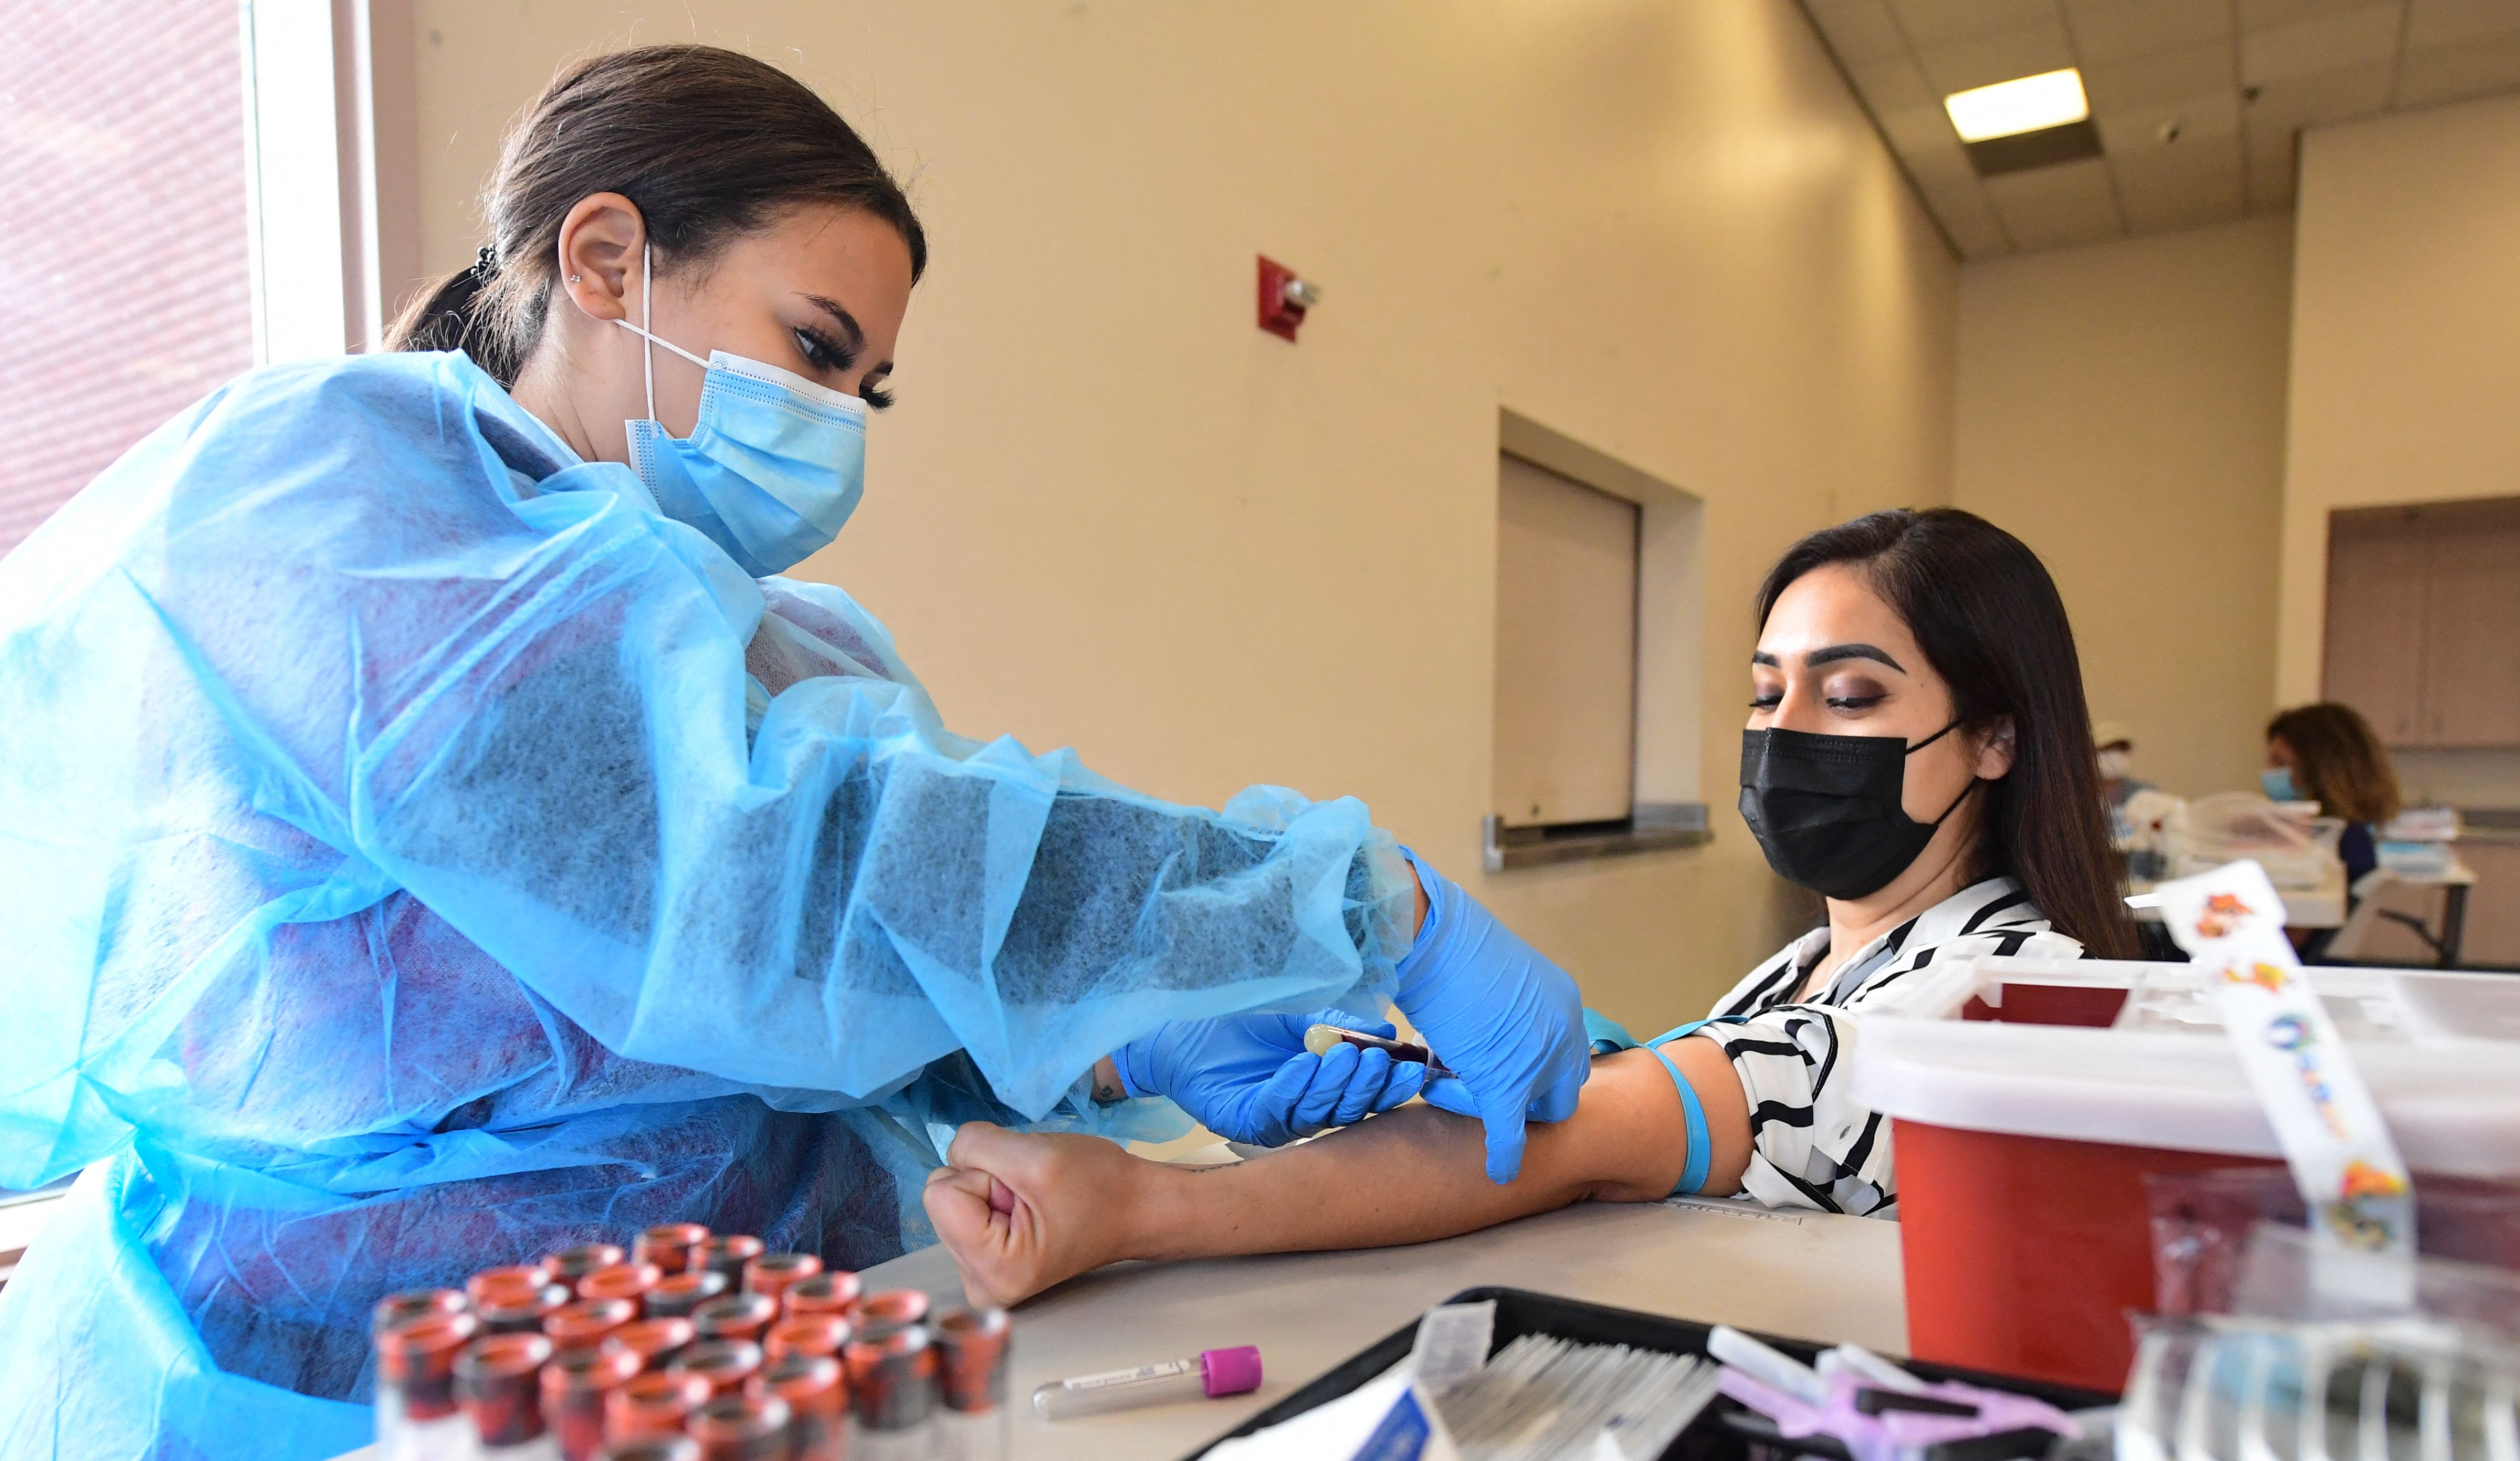 La flebotomista Briana Green extrae sangre de Maritza Nieves durante el nuevo uso de emergencia de la FDA y la prueba de anticuerpos IgG ll autorizada para personas vacunadas, que se ofrece de forma gratuita en Santa Fe Springs, California, el 21 de abril de 2021.